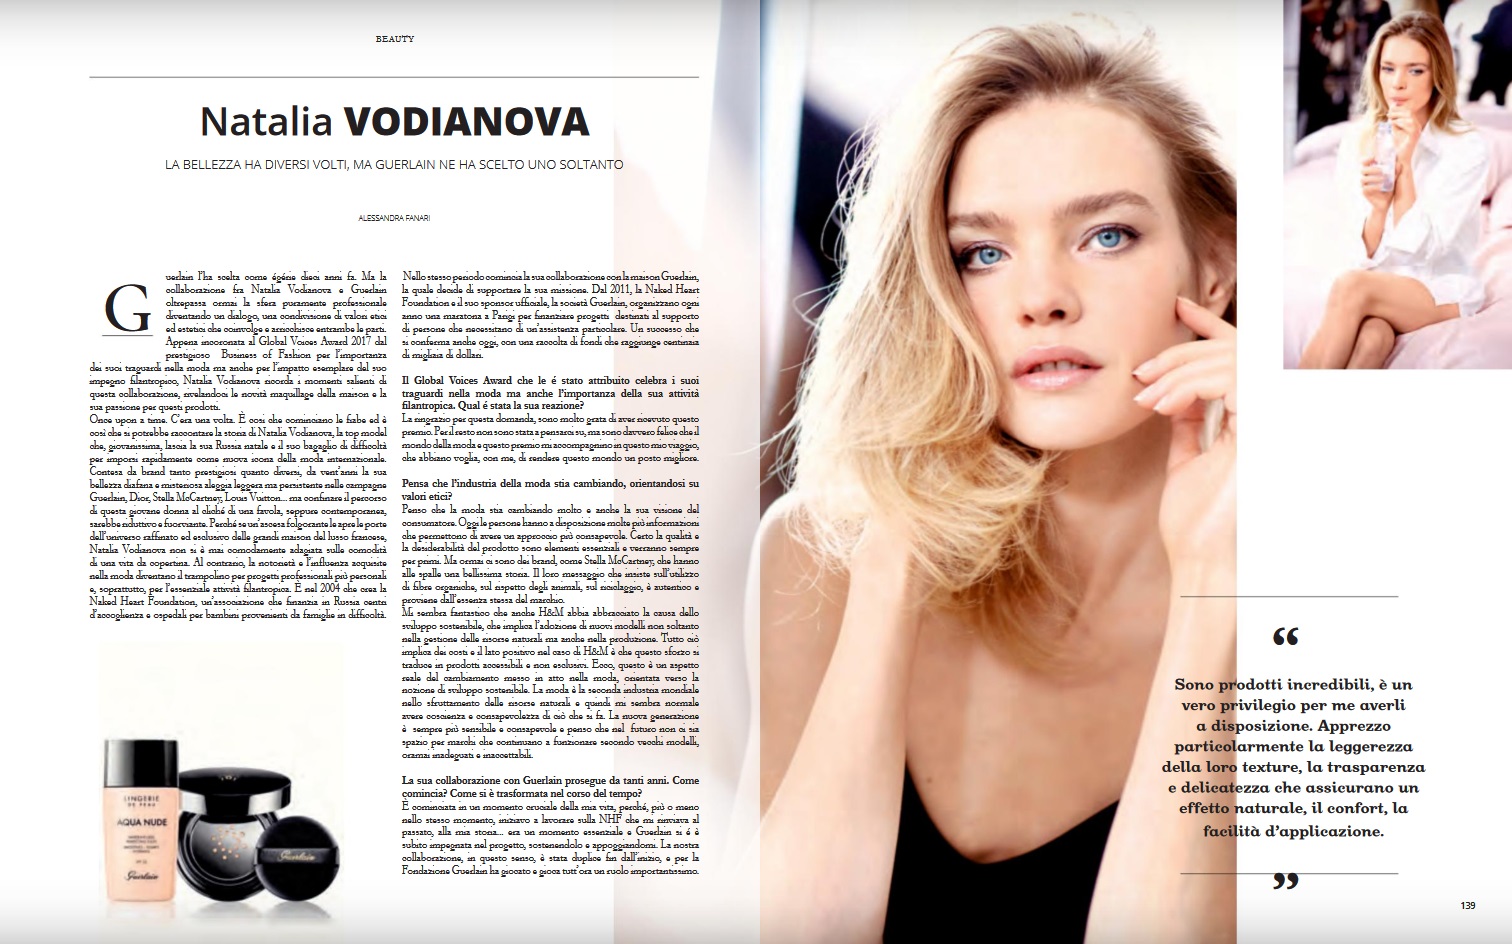 Natalia Vodianova - Posh magazine settembre 2017.jpg